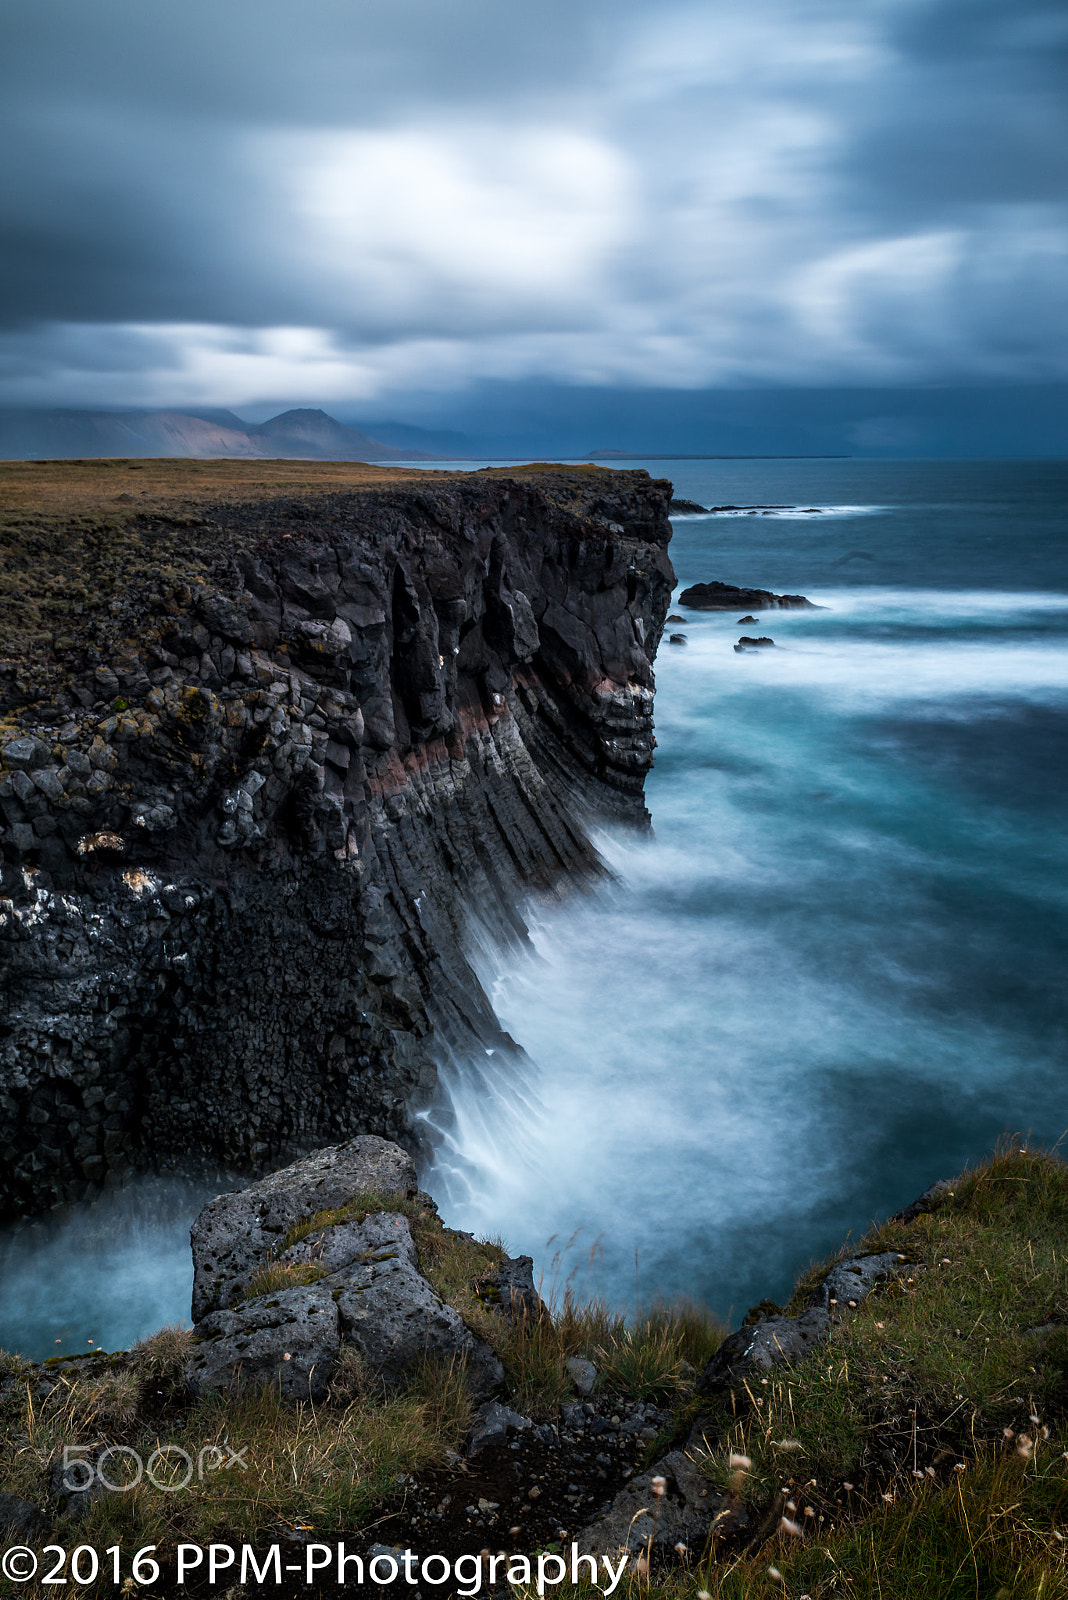 Nikon D810 + Nikon AF Nikkor 28mm F2.8D sample photo. Iceland, cliffs and clouds photography